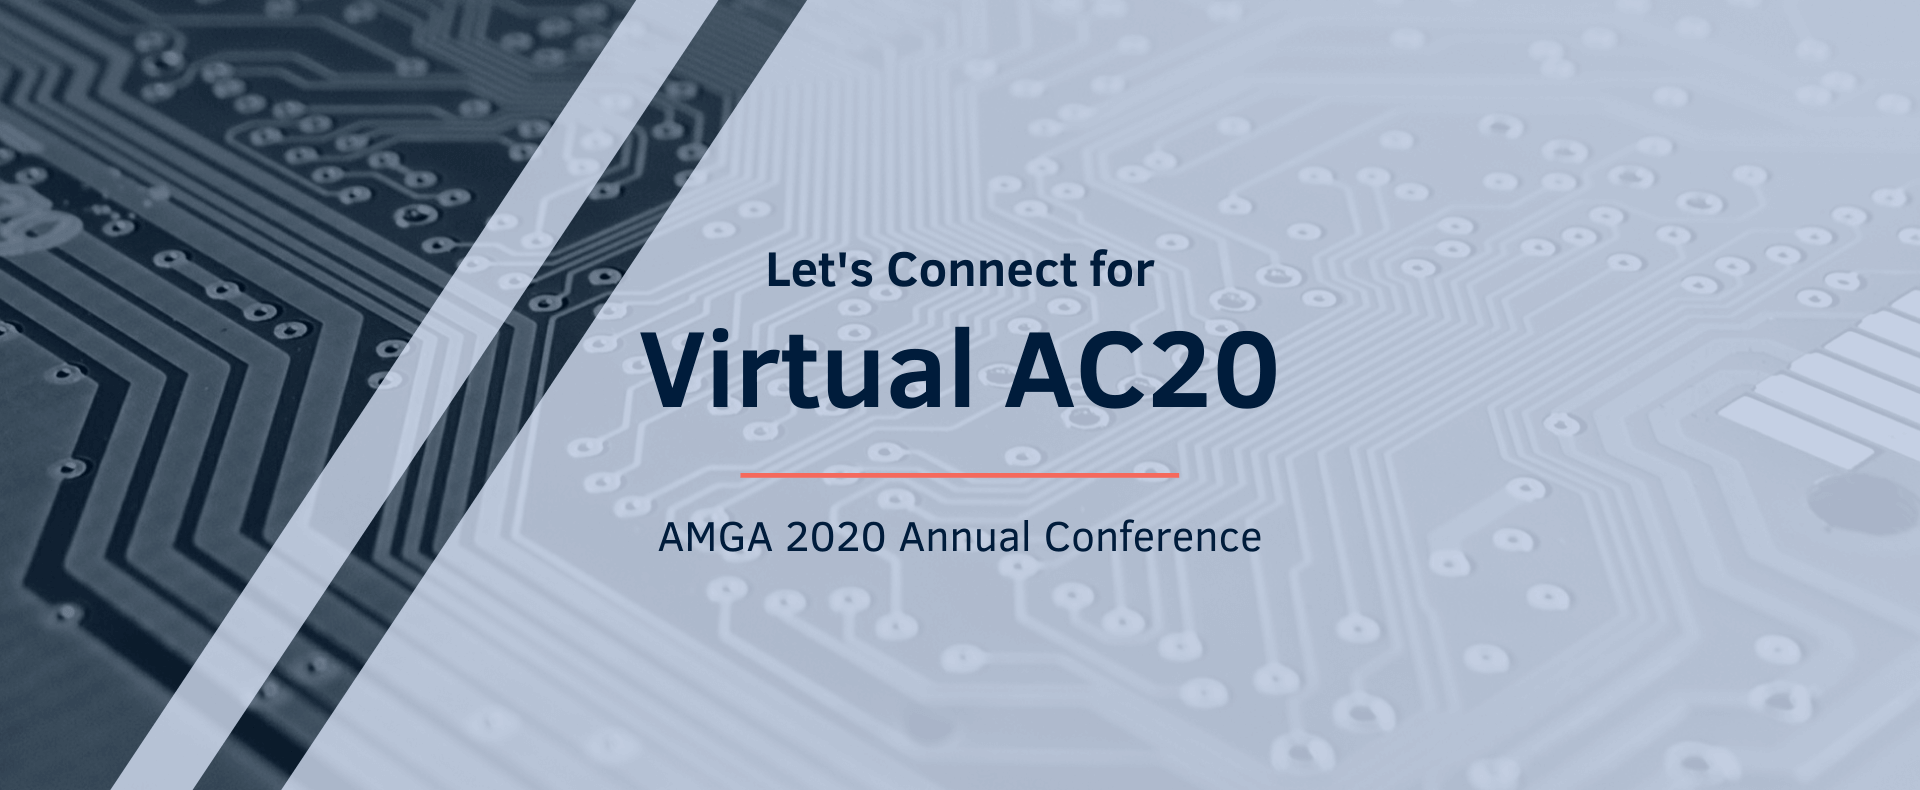 Virtual AMGA 2020 Landing Page